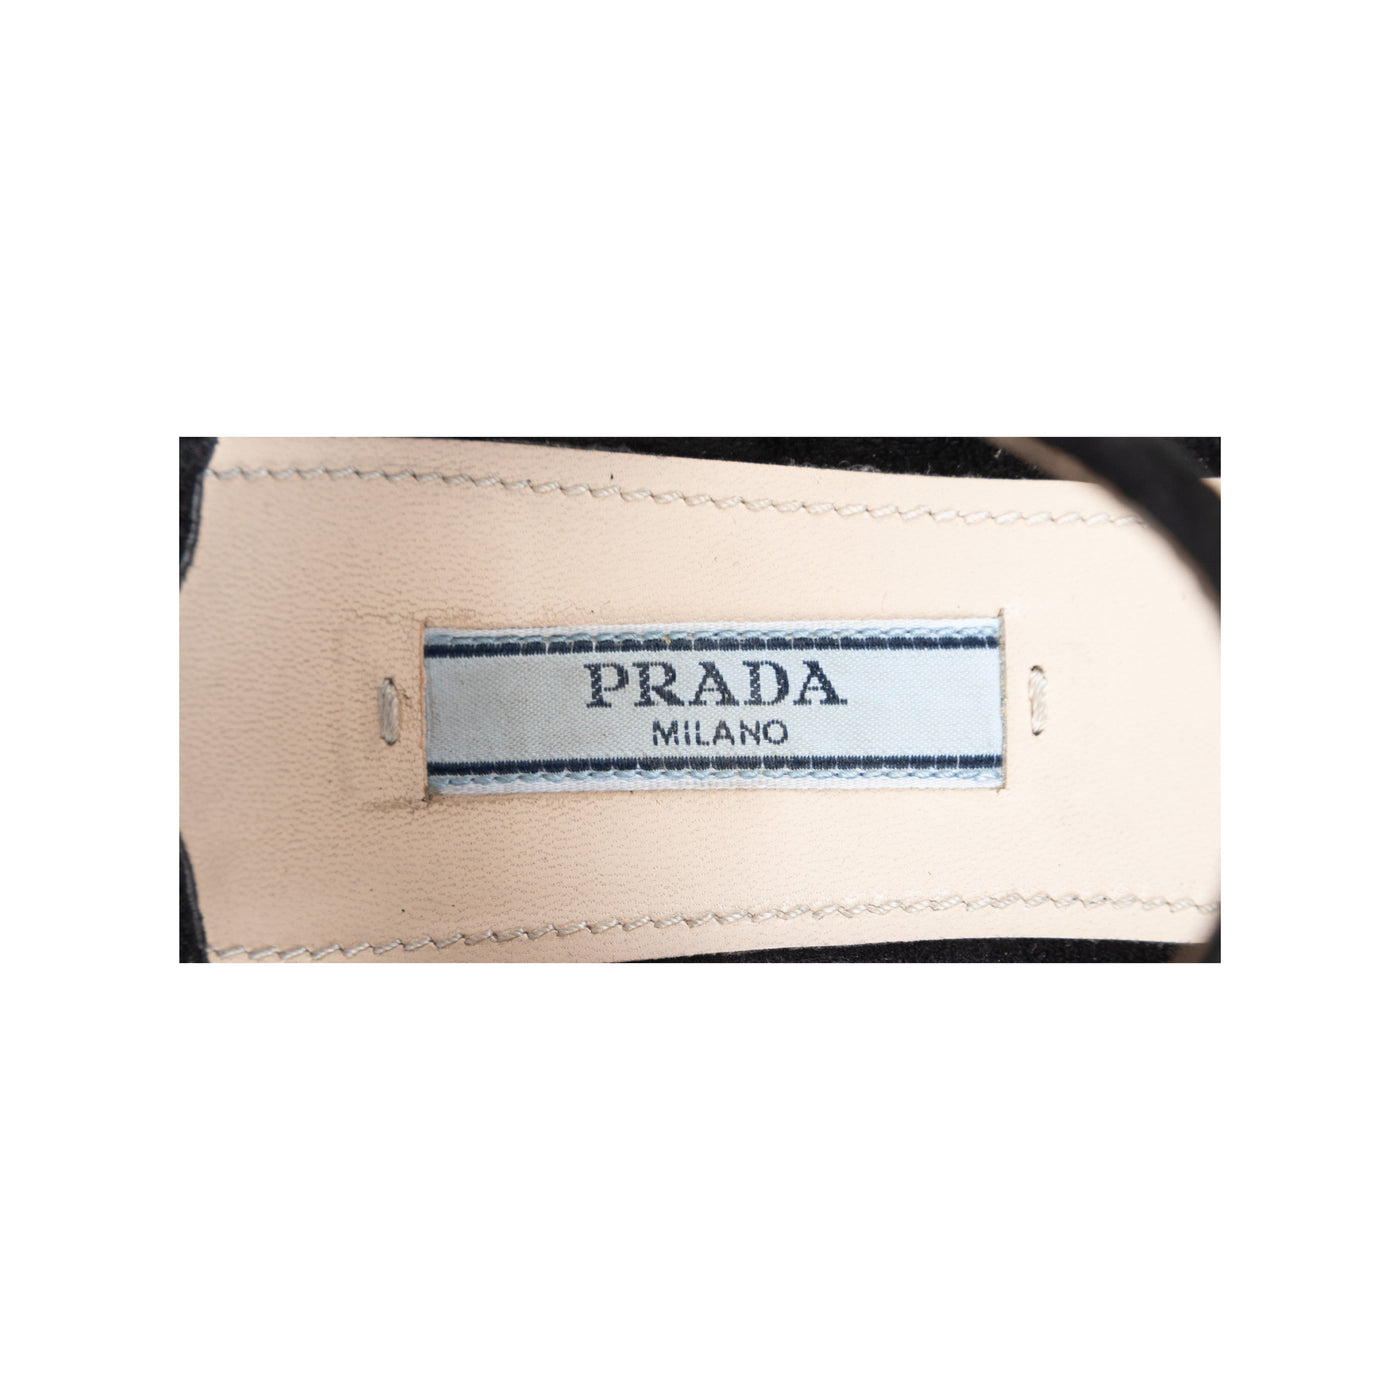 Secondhand Prada Suede Open-toe Heels